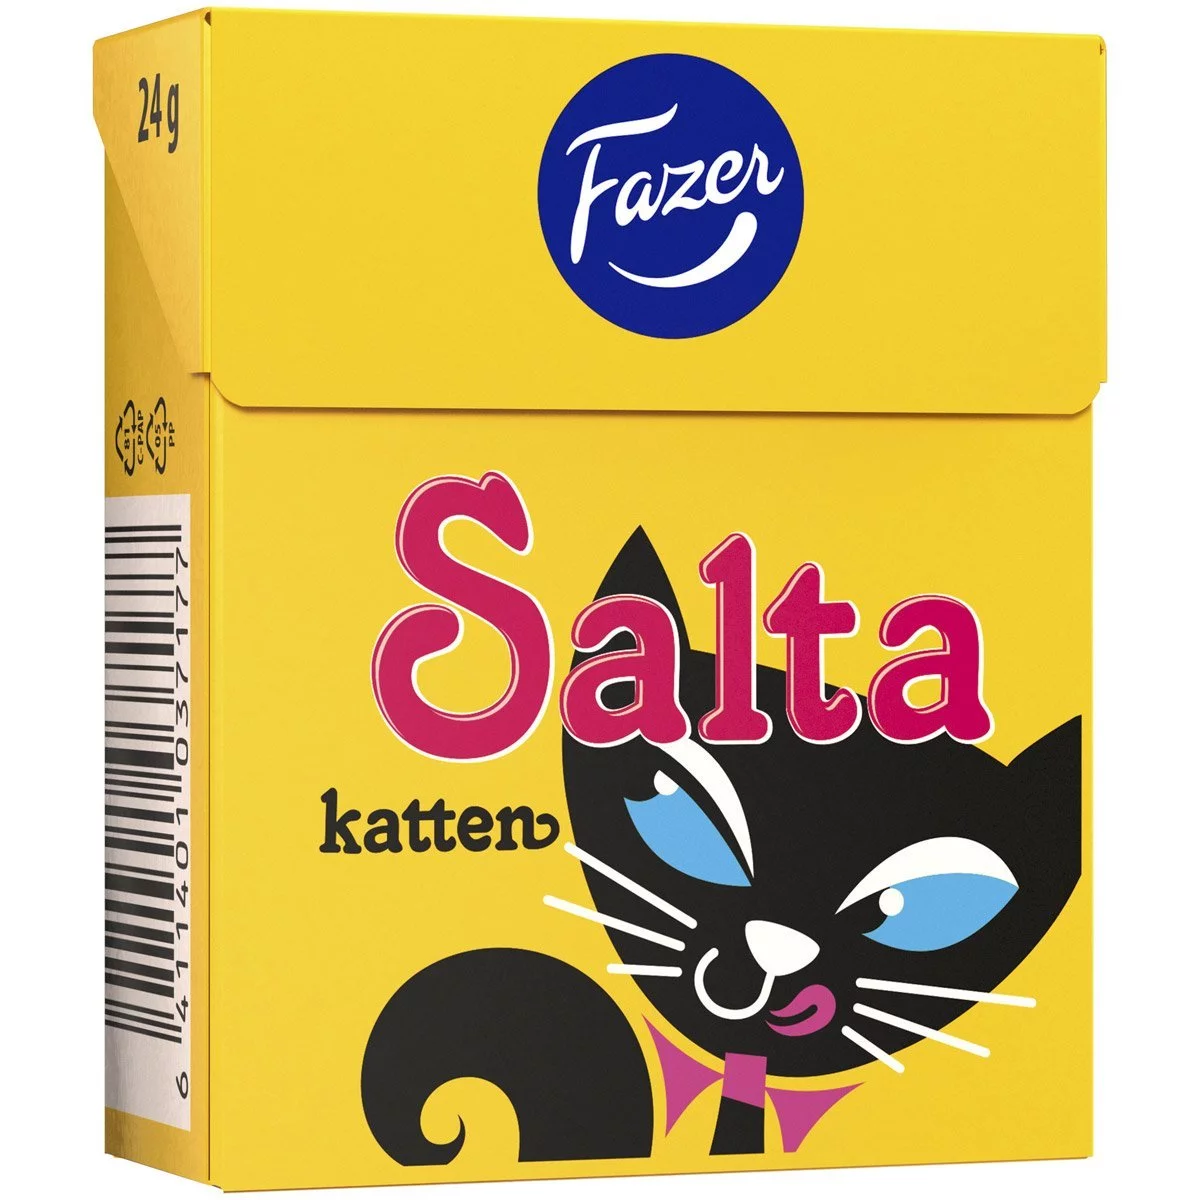 Fazer Salta Katten - Box (24g) 1